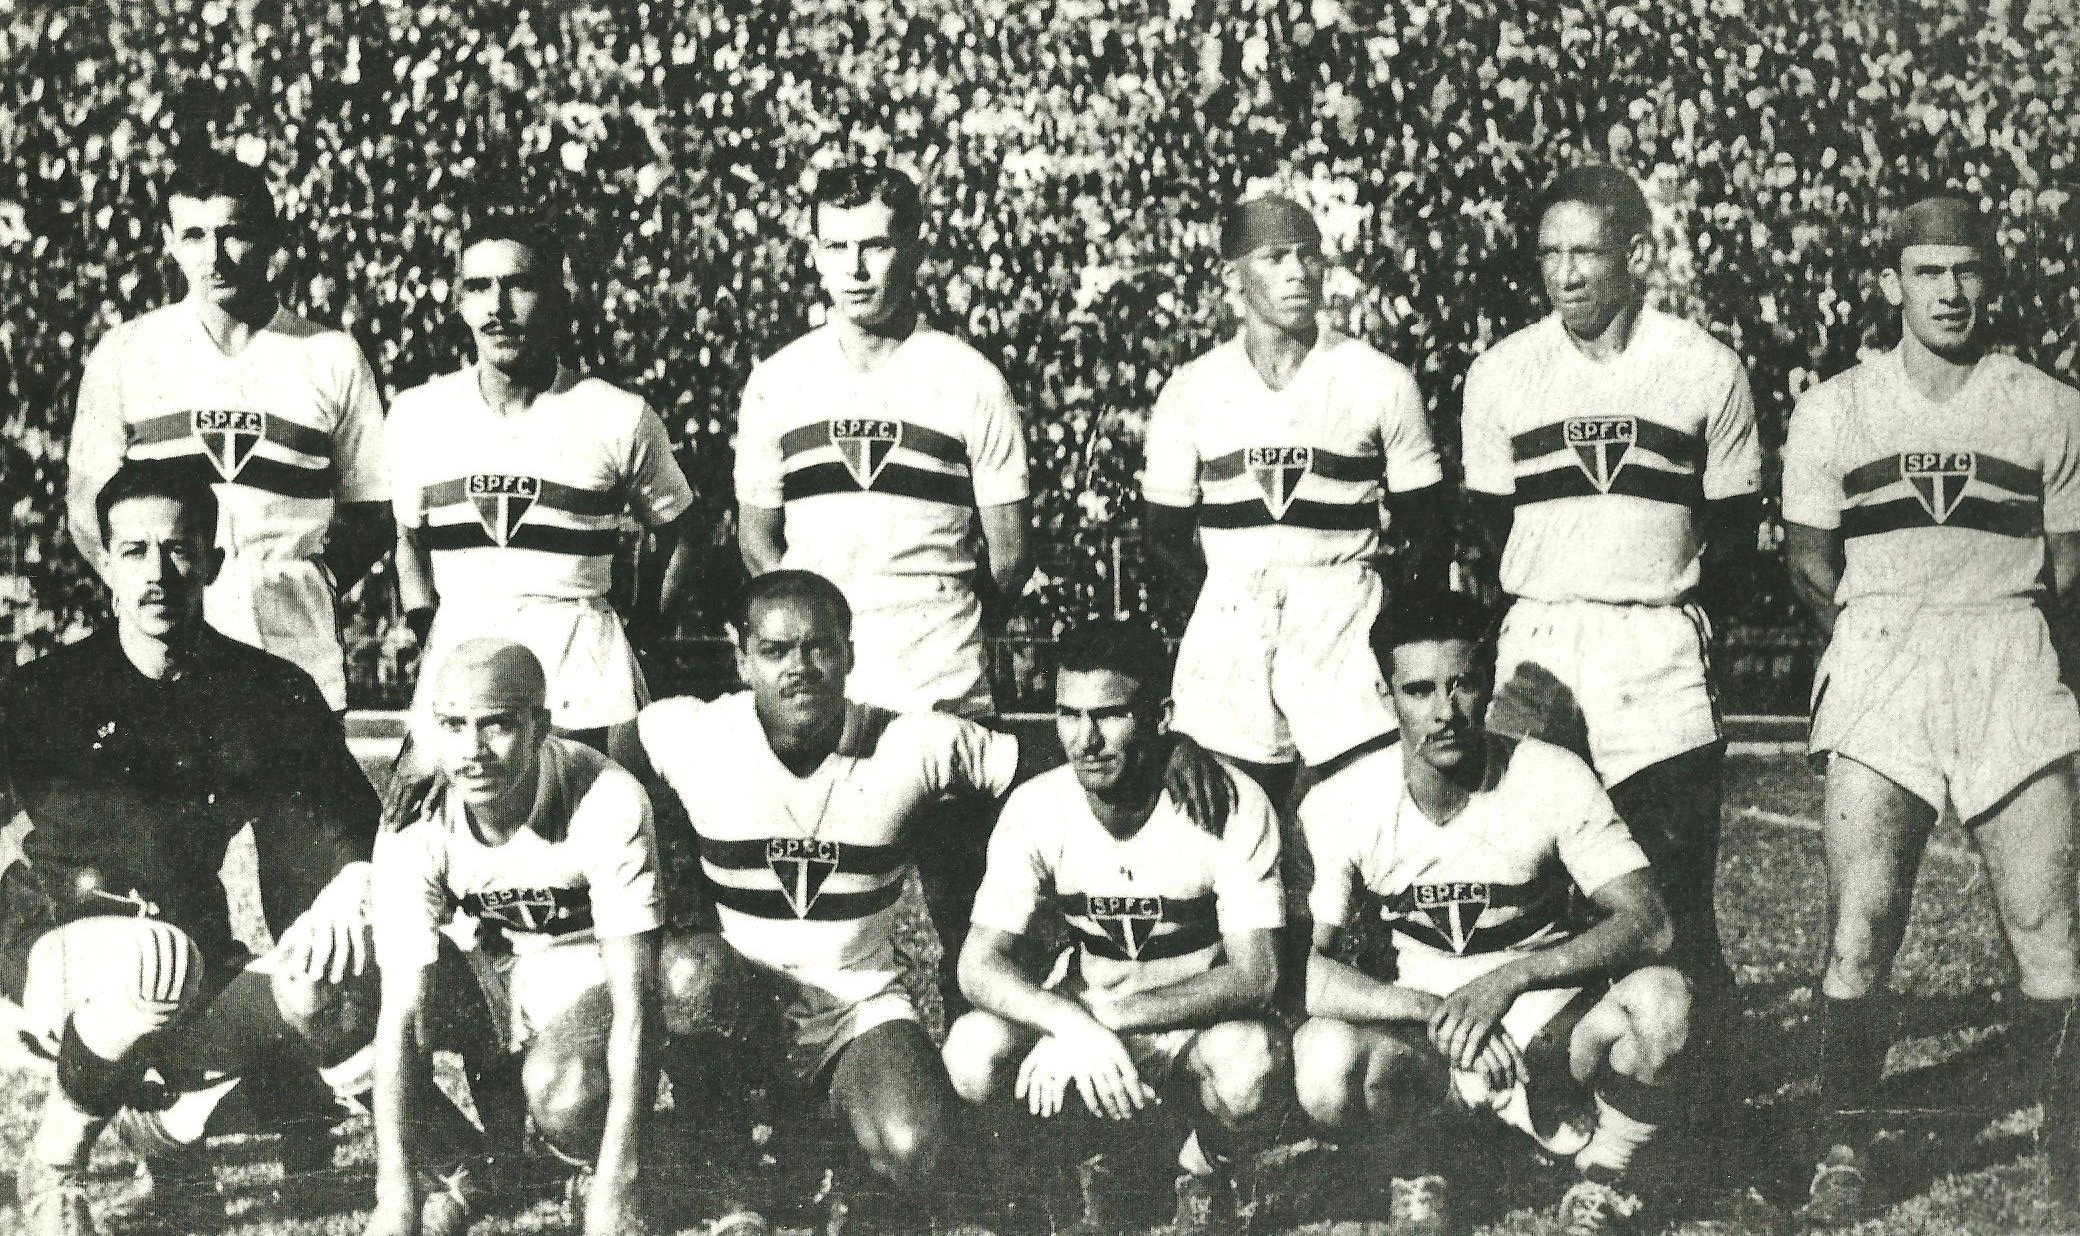 Em 1942, um dos primeiros jogos de Leônidas no São Paulo. Em pé, da esquerda para a direita, Fiorotti, Luisinho, Virgílio, Silva, Florindo, Lola e Zaclis. Agachados, da esquerda para a direita, Doutor, Waldemar de Brito, Leônidas da Silva, Teixeirinha e Pardal. 